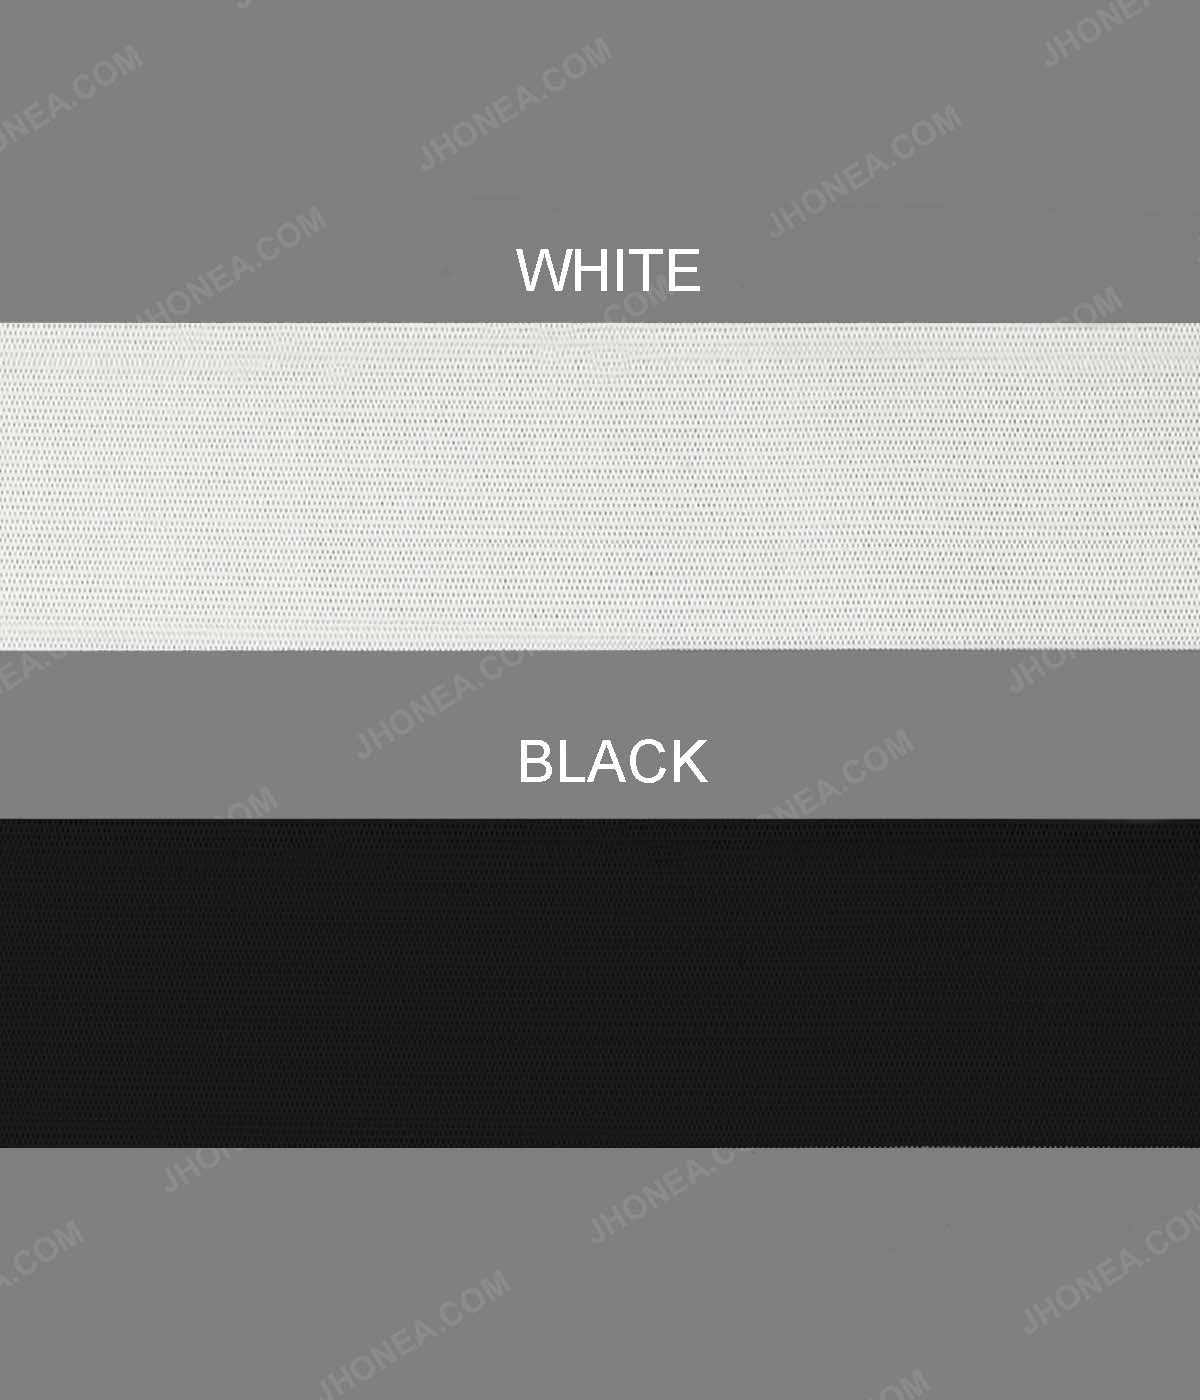 Plain Soft Black & White Tailors' Woven Elastic for Casings